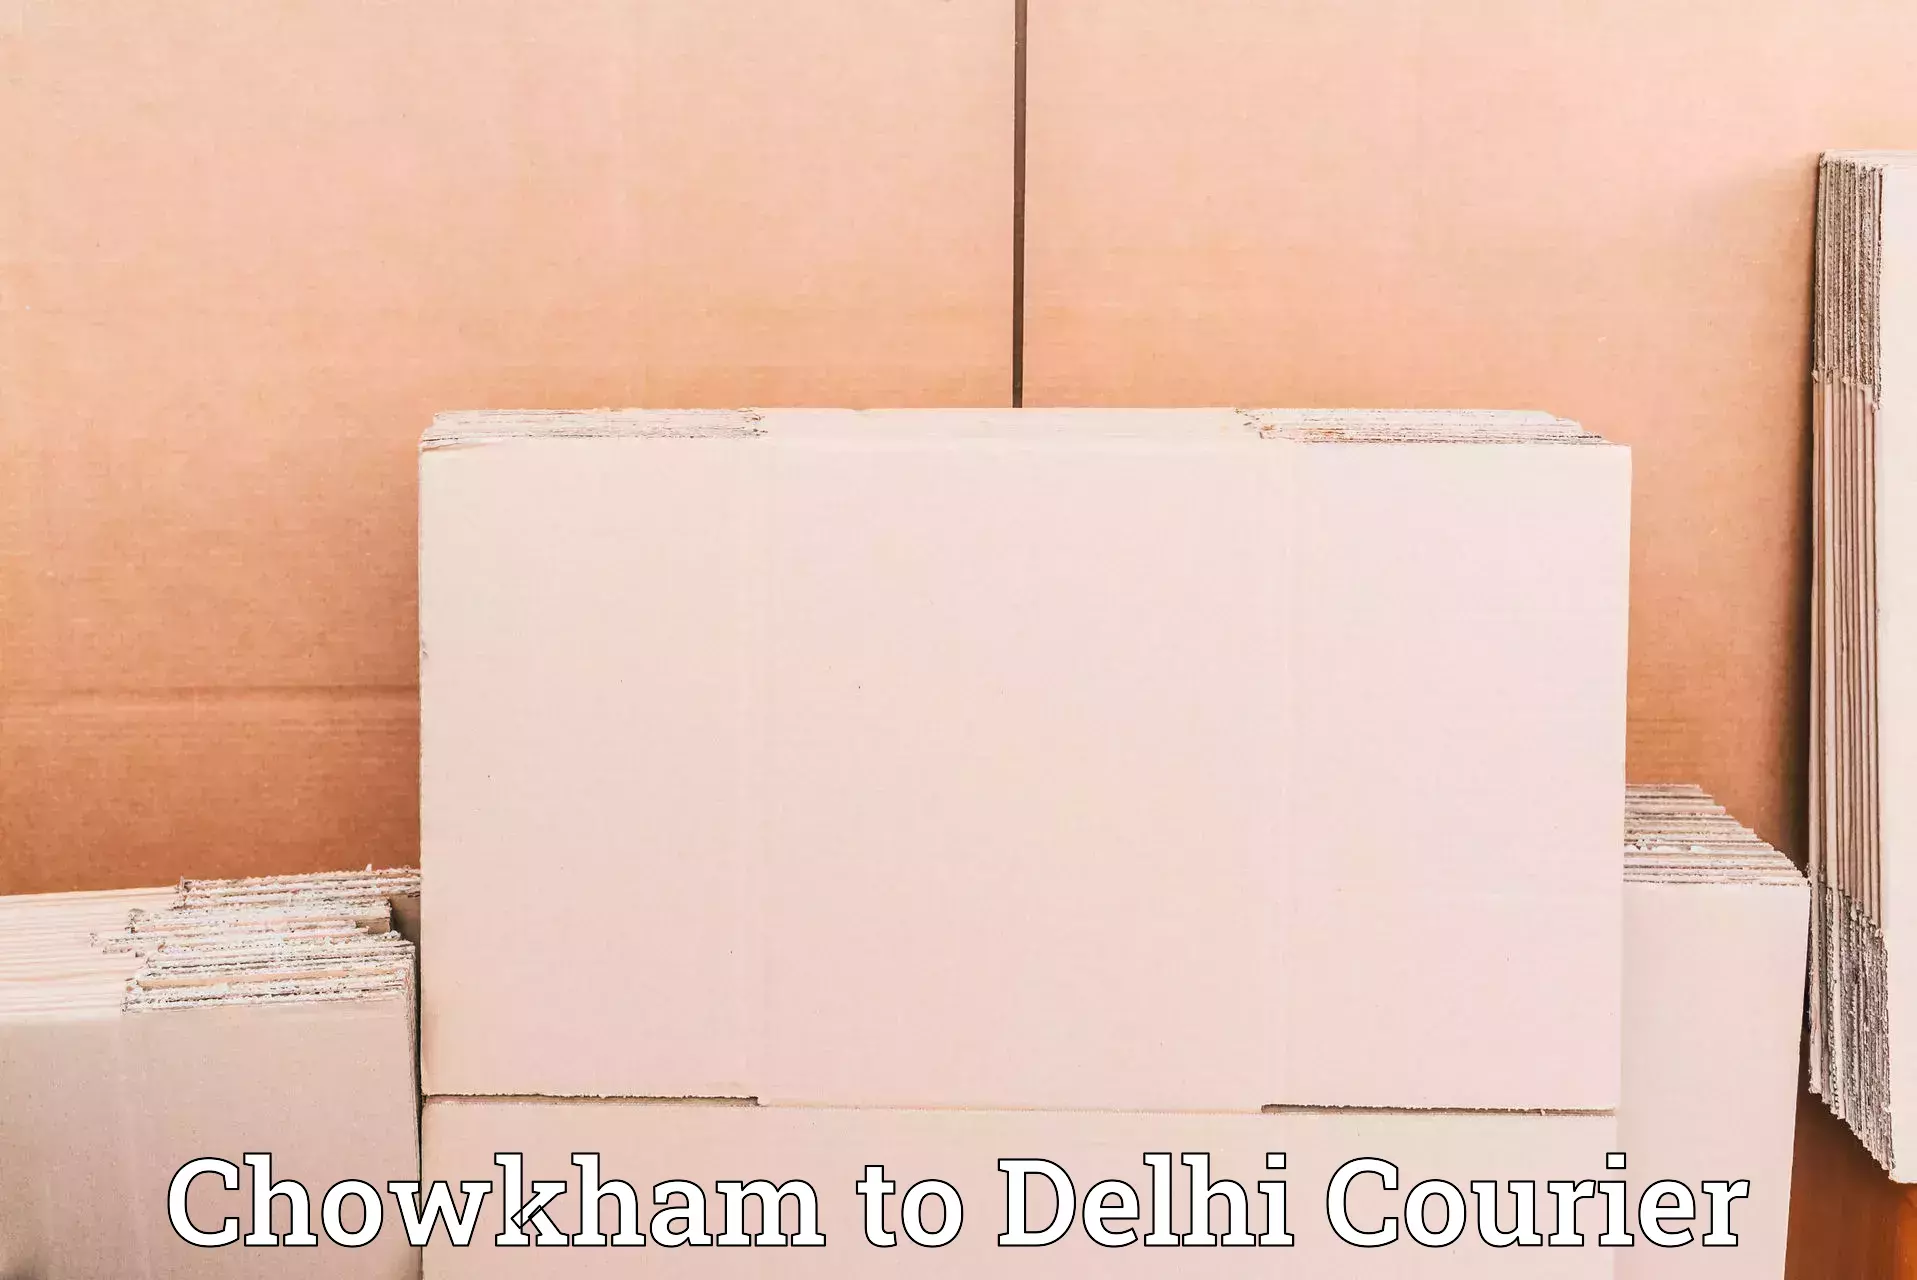 High-speed parcel service Chowkham to IIT Delhi